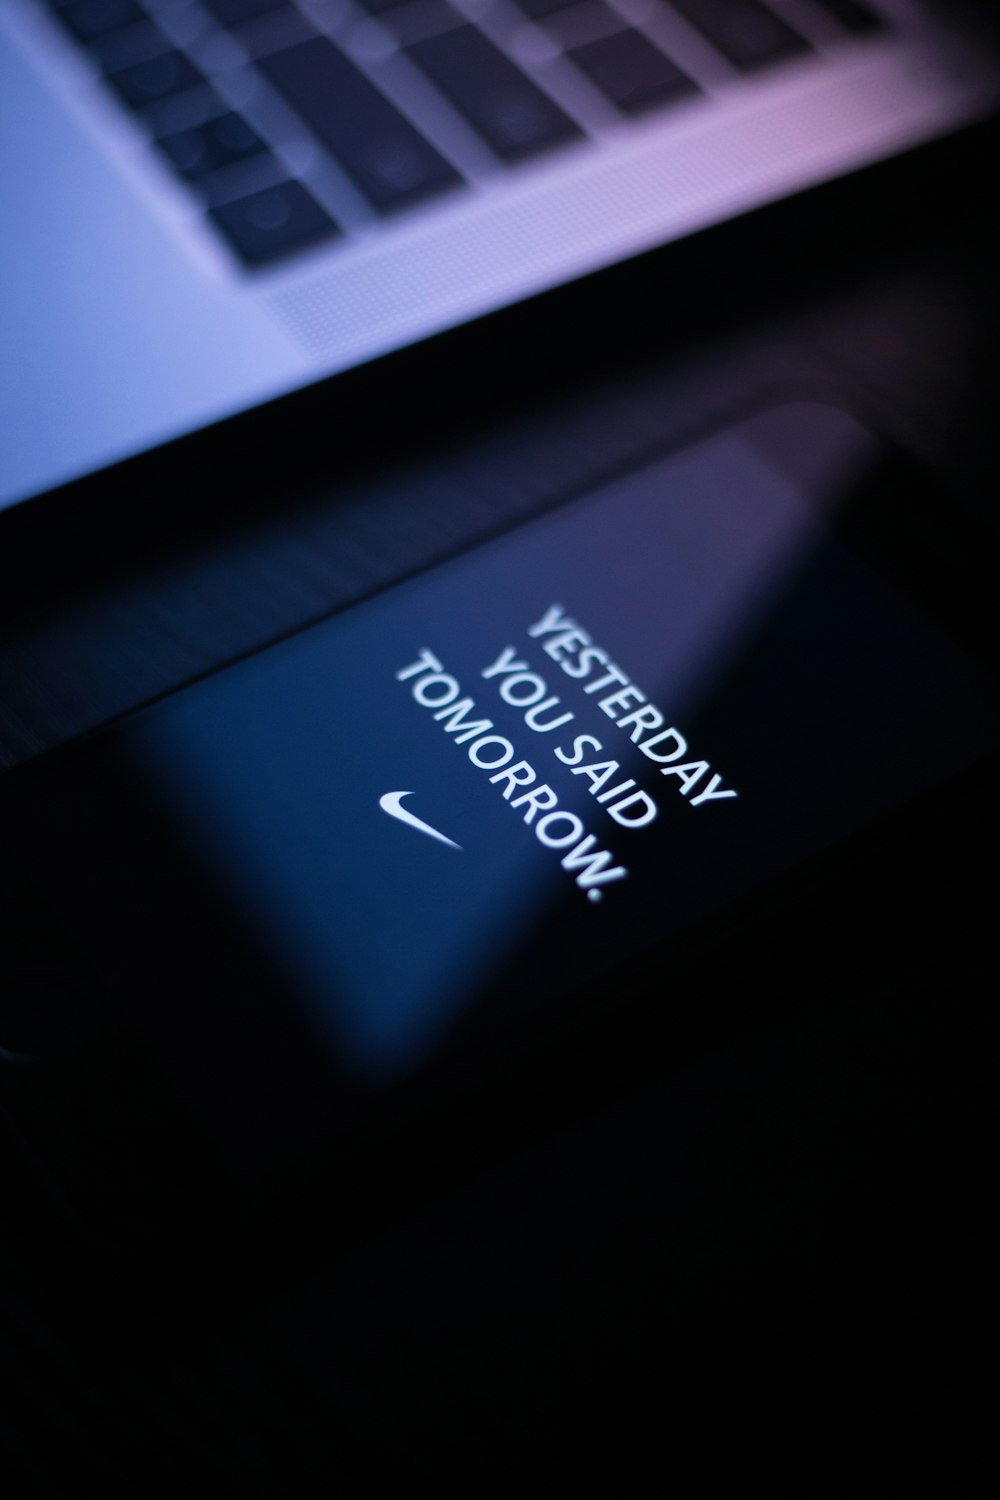 turned-on black smartphone